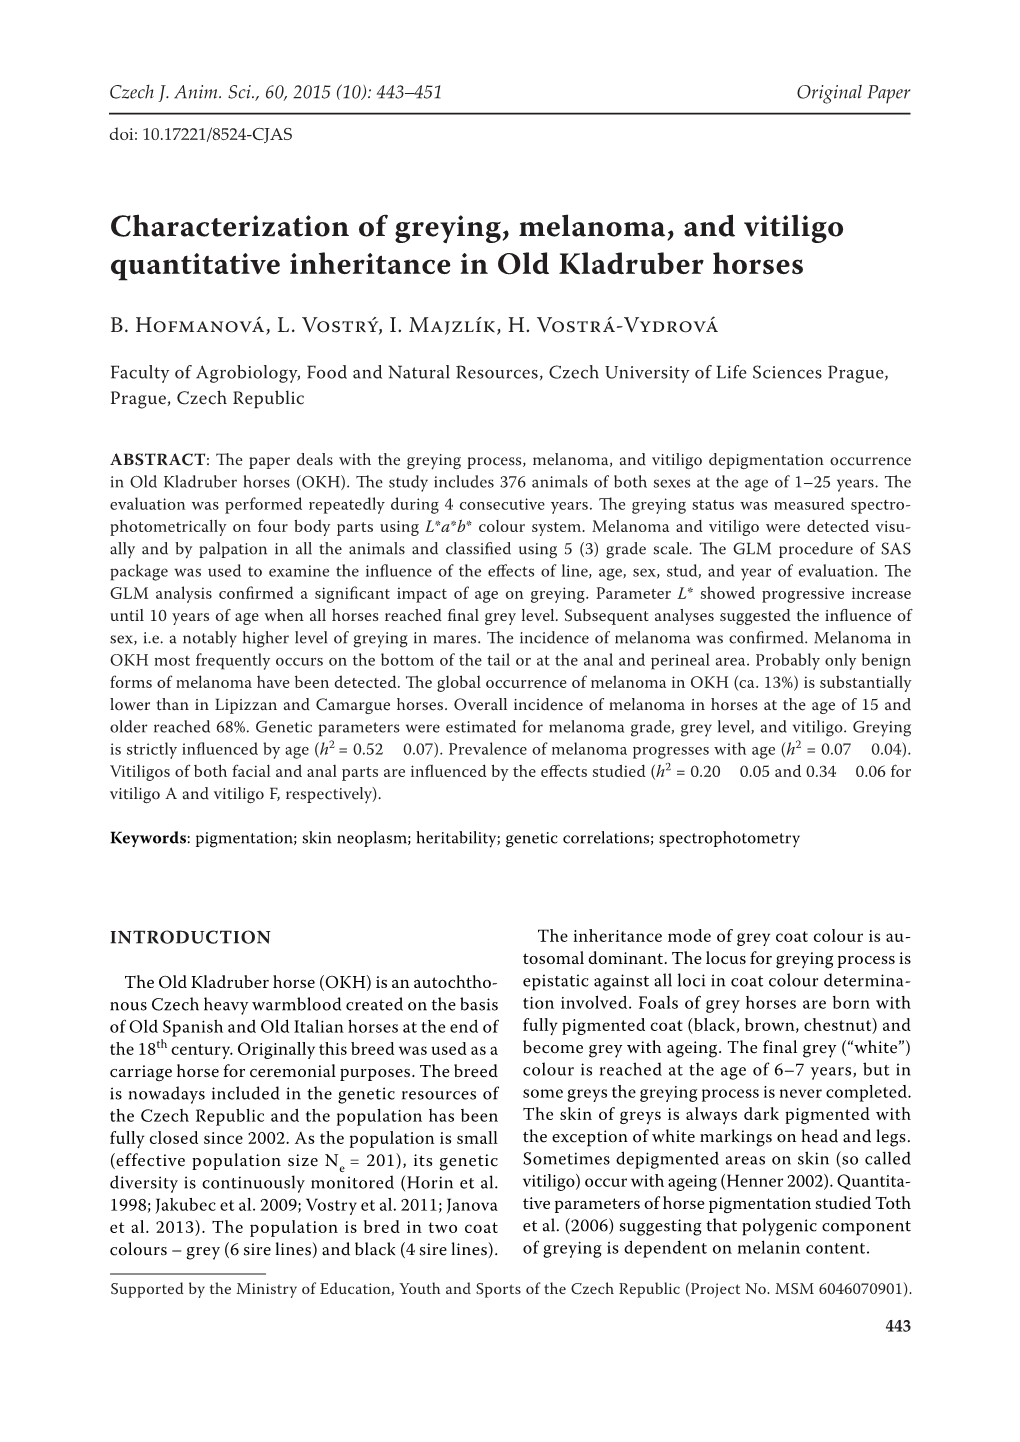 Characterization of Greying, Melanoma, and Vitiligo Quantitative Inheritance in Old Kladruber Horses